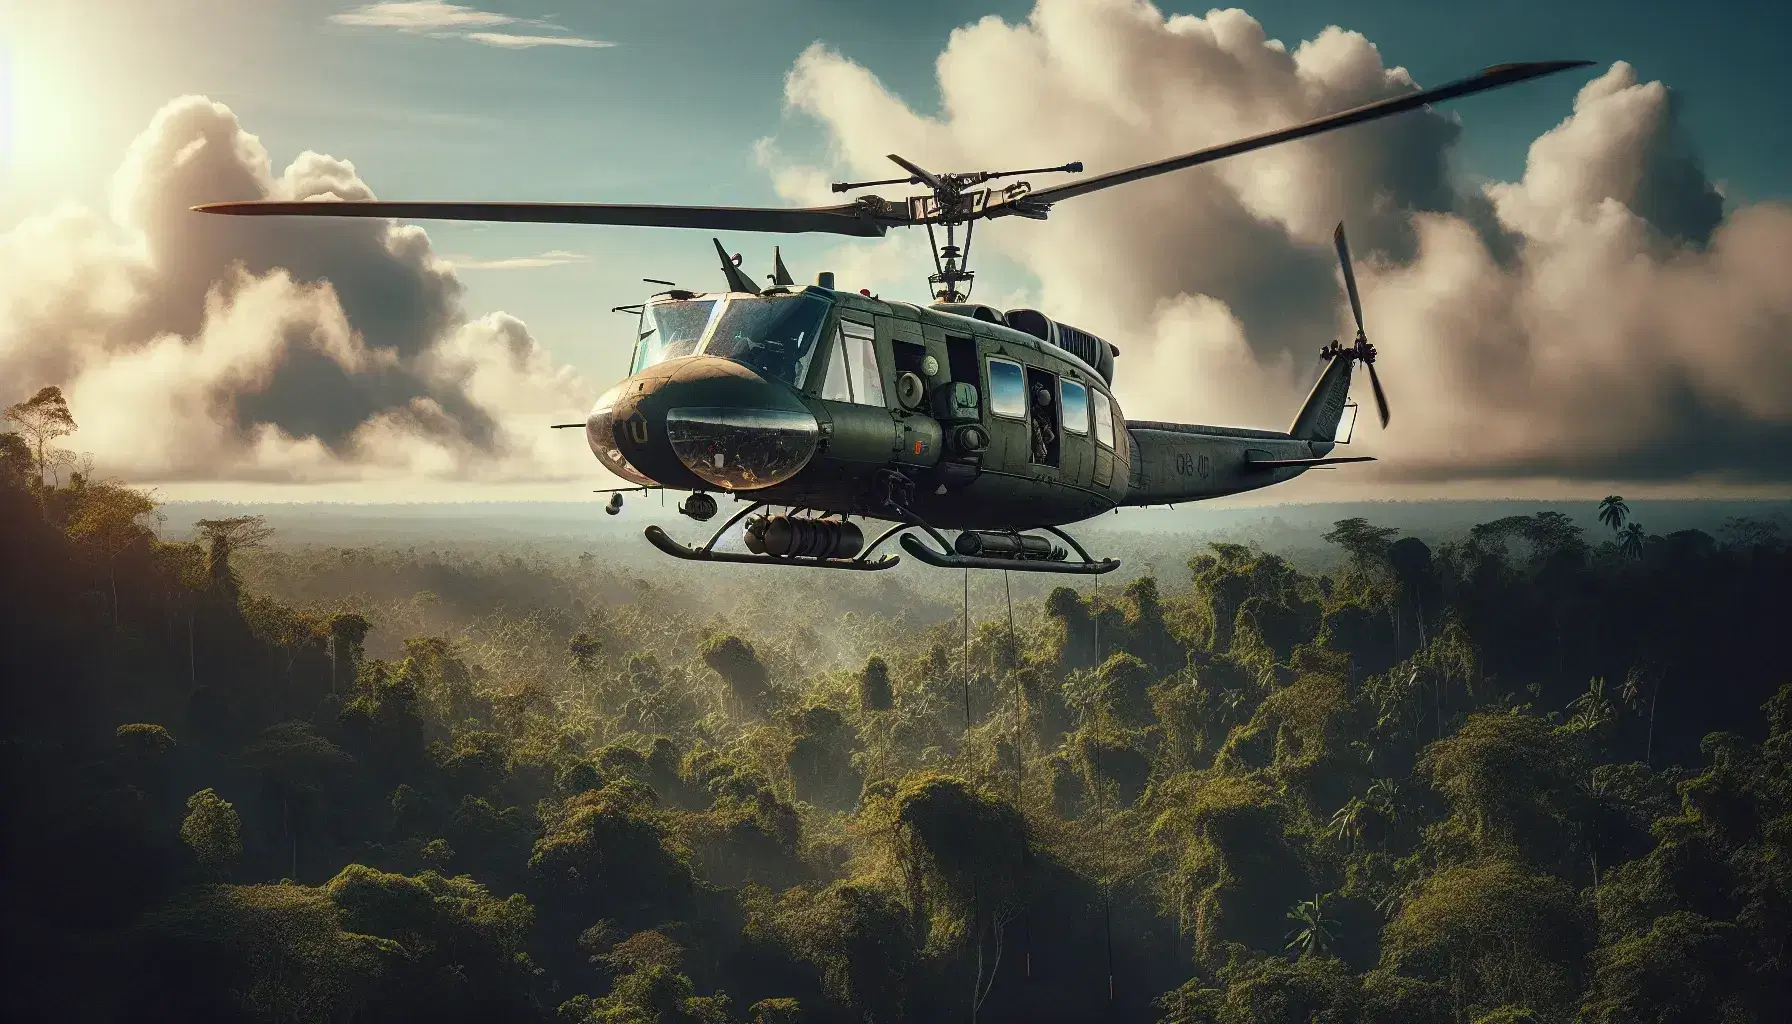 Helicóptero militar de color verde oliva con dos rotores sobrevuela selva tropical en un día soleado con cielo azul y nubes dispersas.